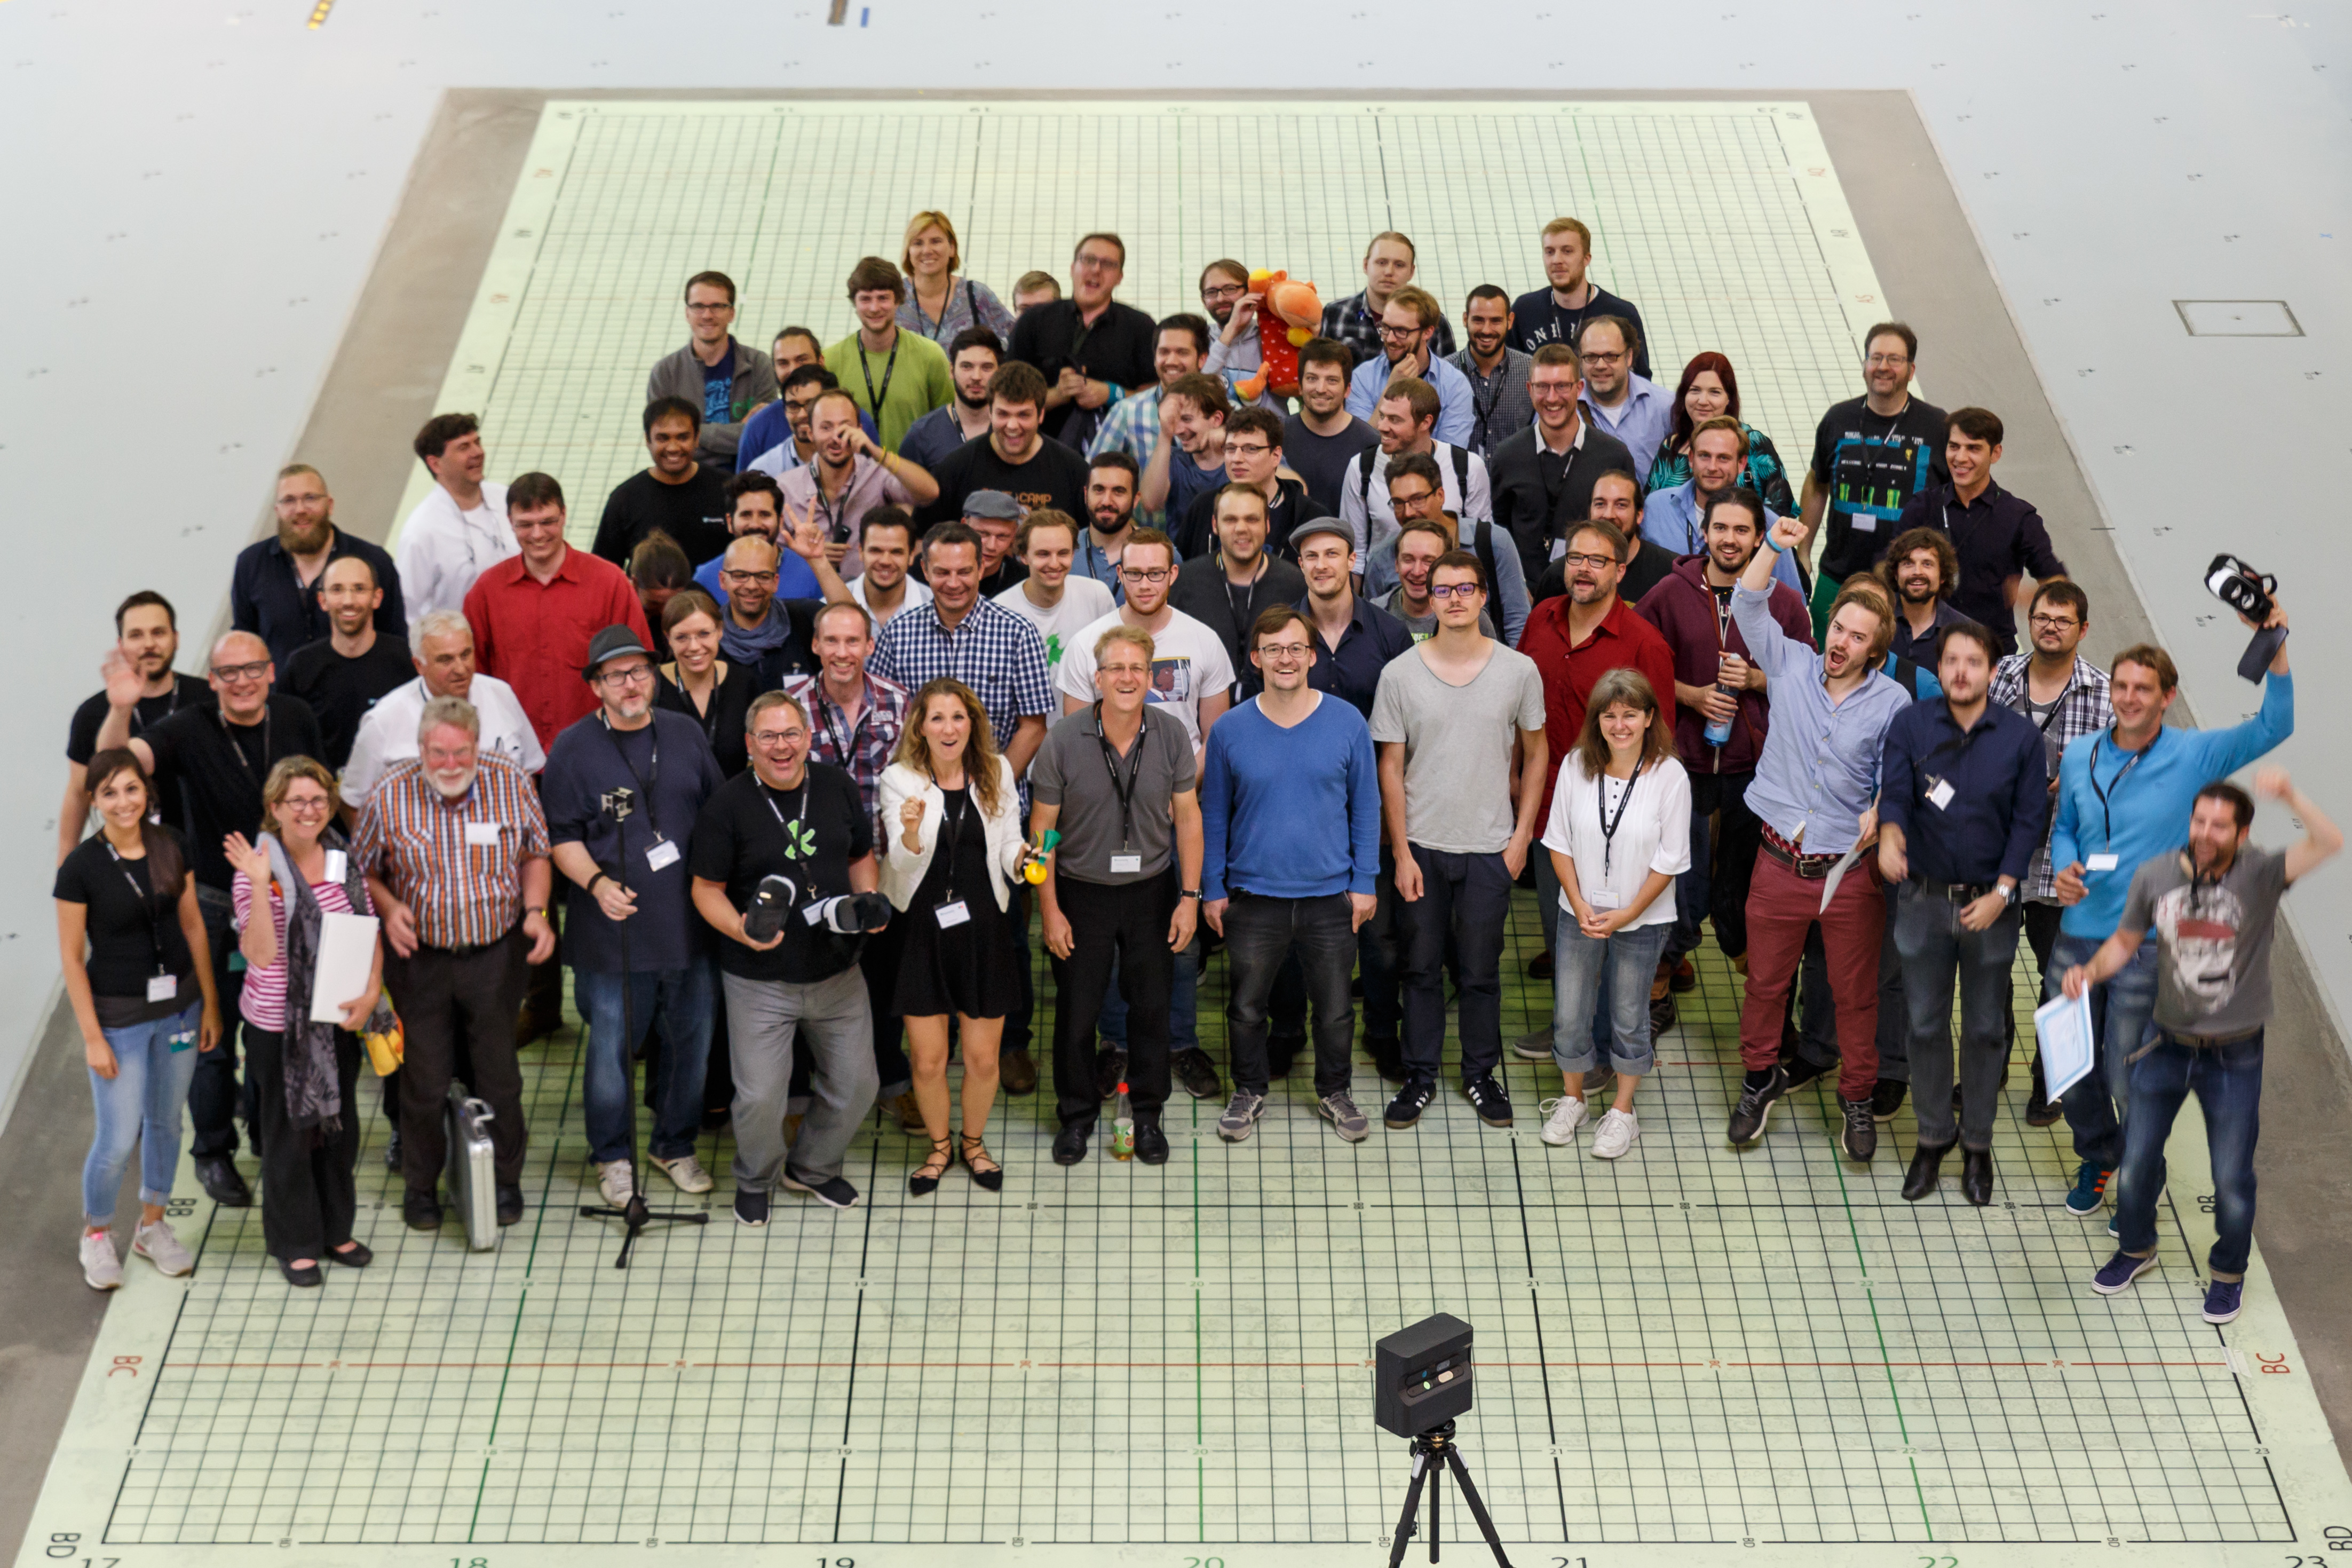 Teilnehmer, Veranstalter und Jury des Hackathons auf einer der Flächen des Test- und Anwendungszentrum L.I.N.K. © Fraunhofer IIS